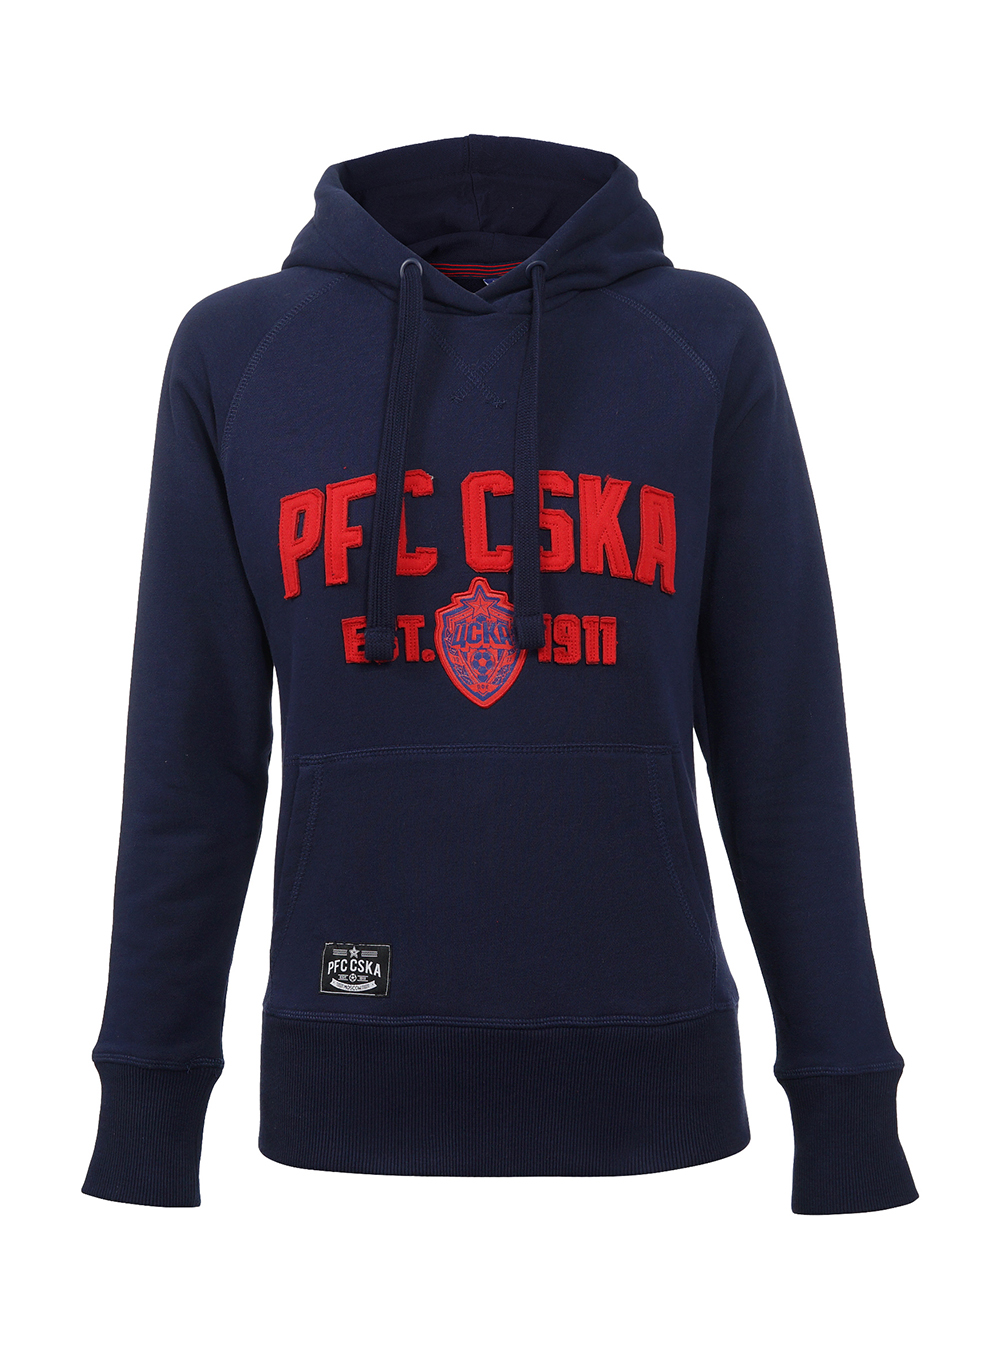 Толстовка женская "PFC CSKA est.1911", цвет синий (XS) от Cskashop